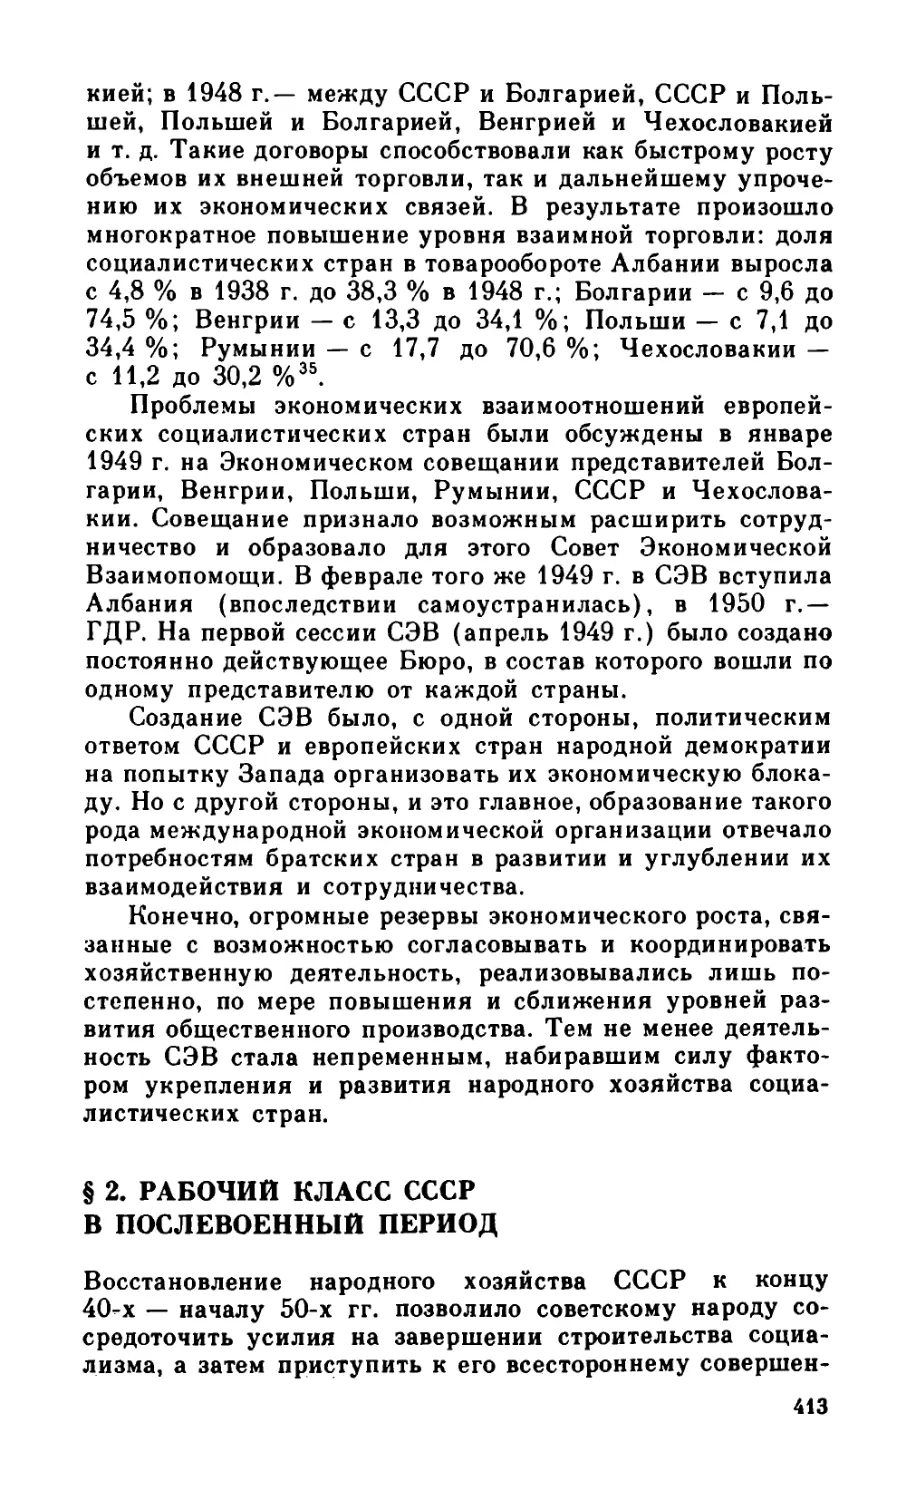 § 2. Рабочий класс СССР в послевоенный период